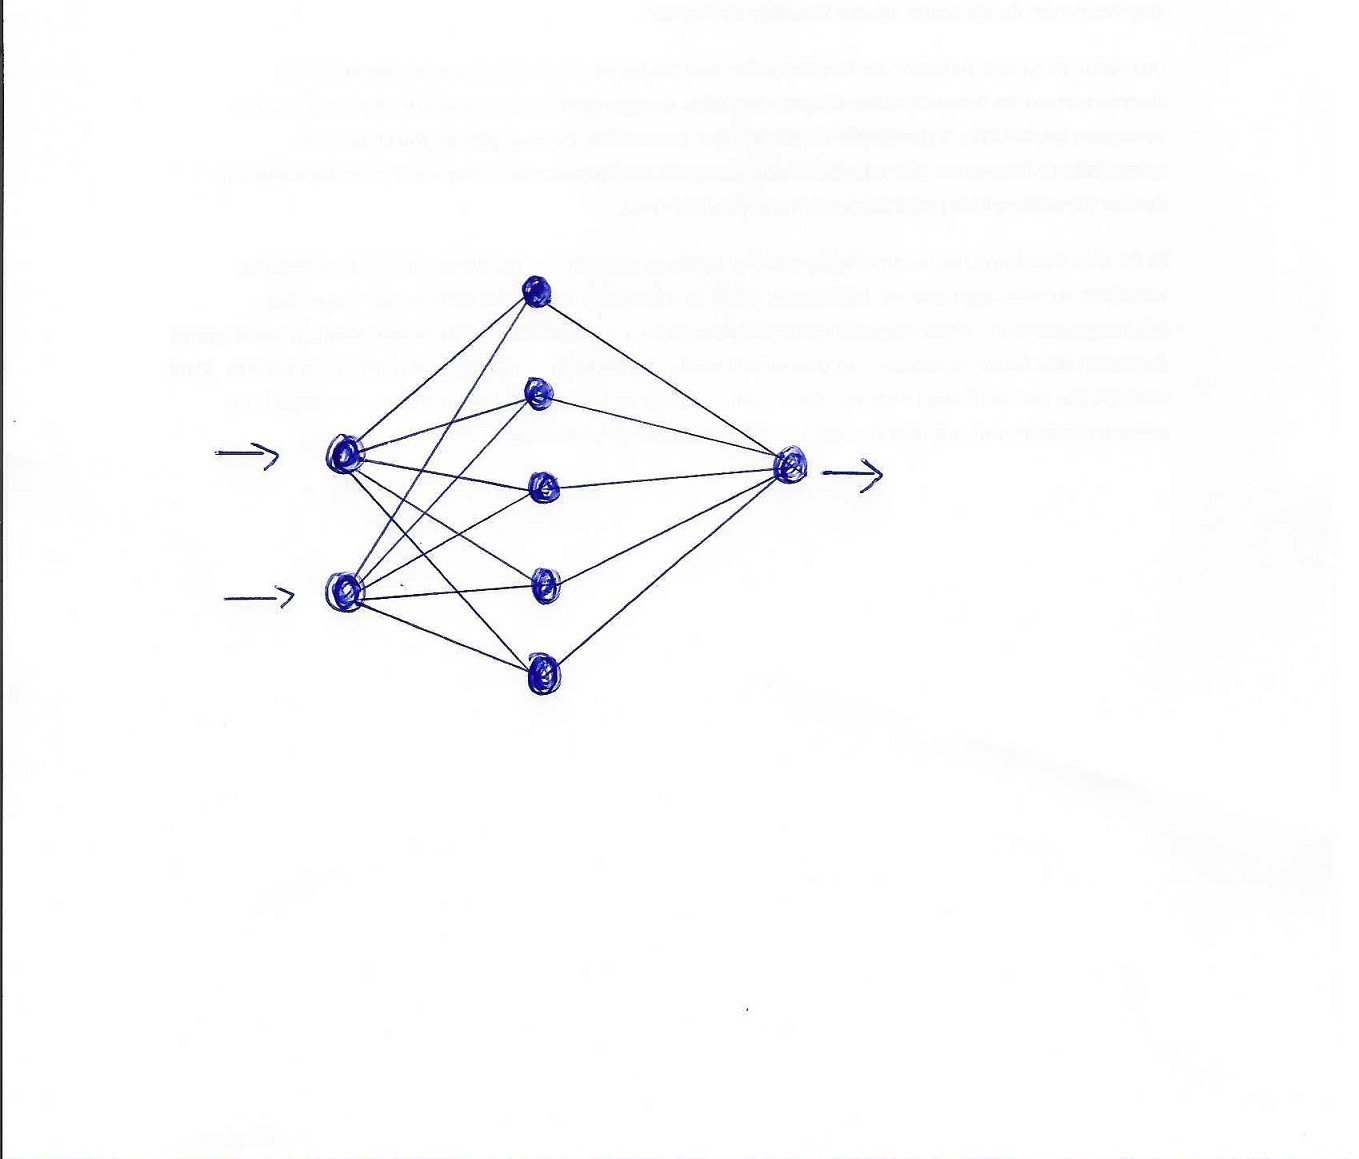 einfache Darstellung eines künstlichen neuronalen Netzes